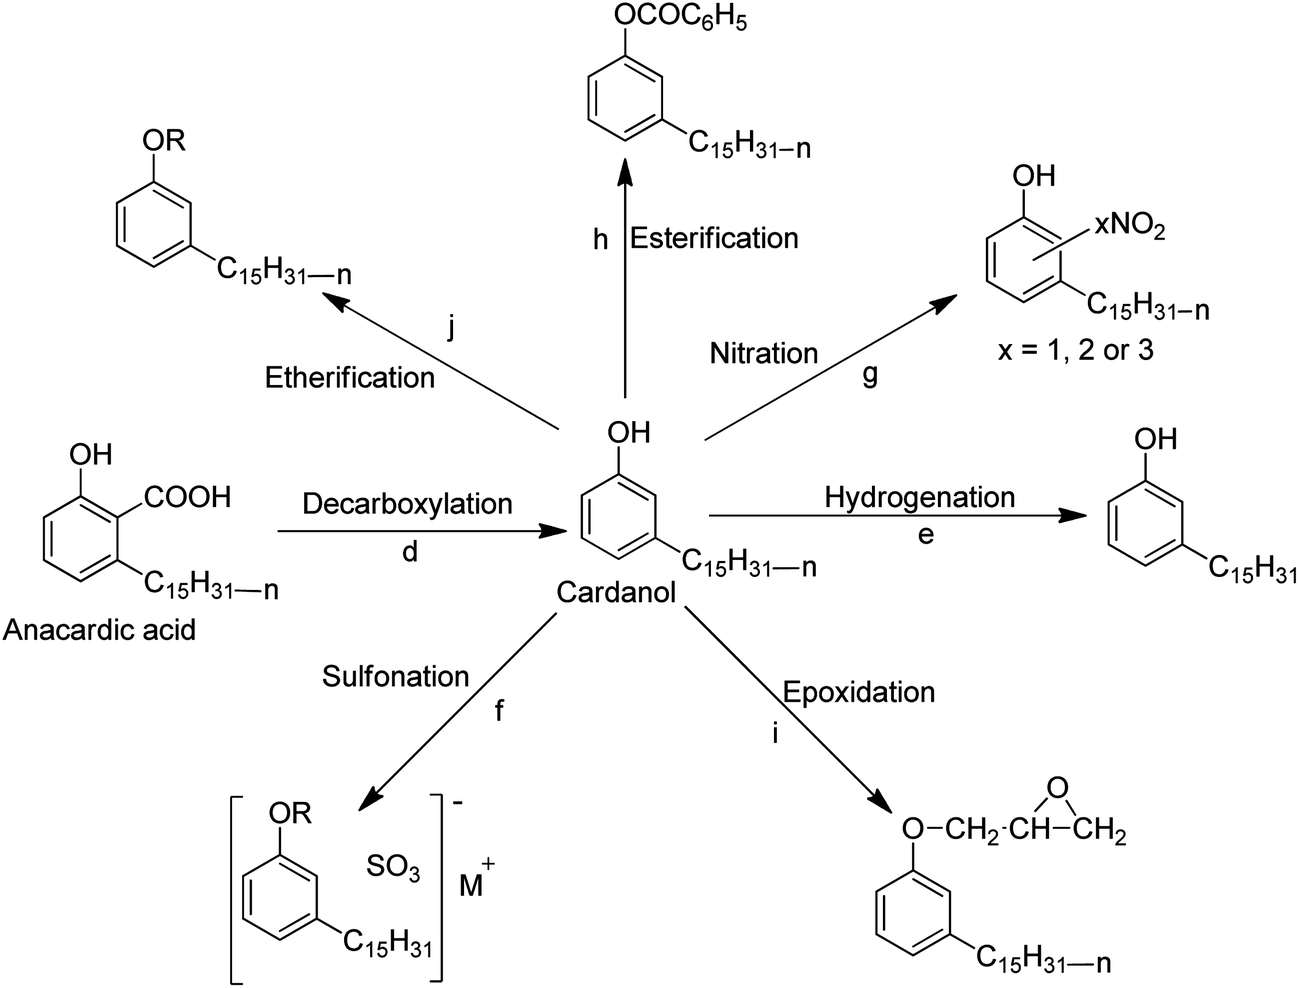 cardanol-major-reactions1